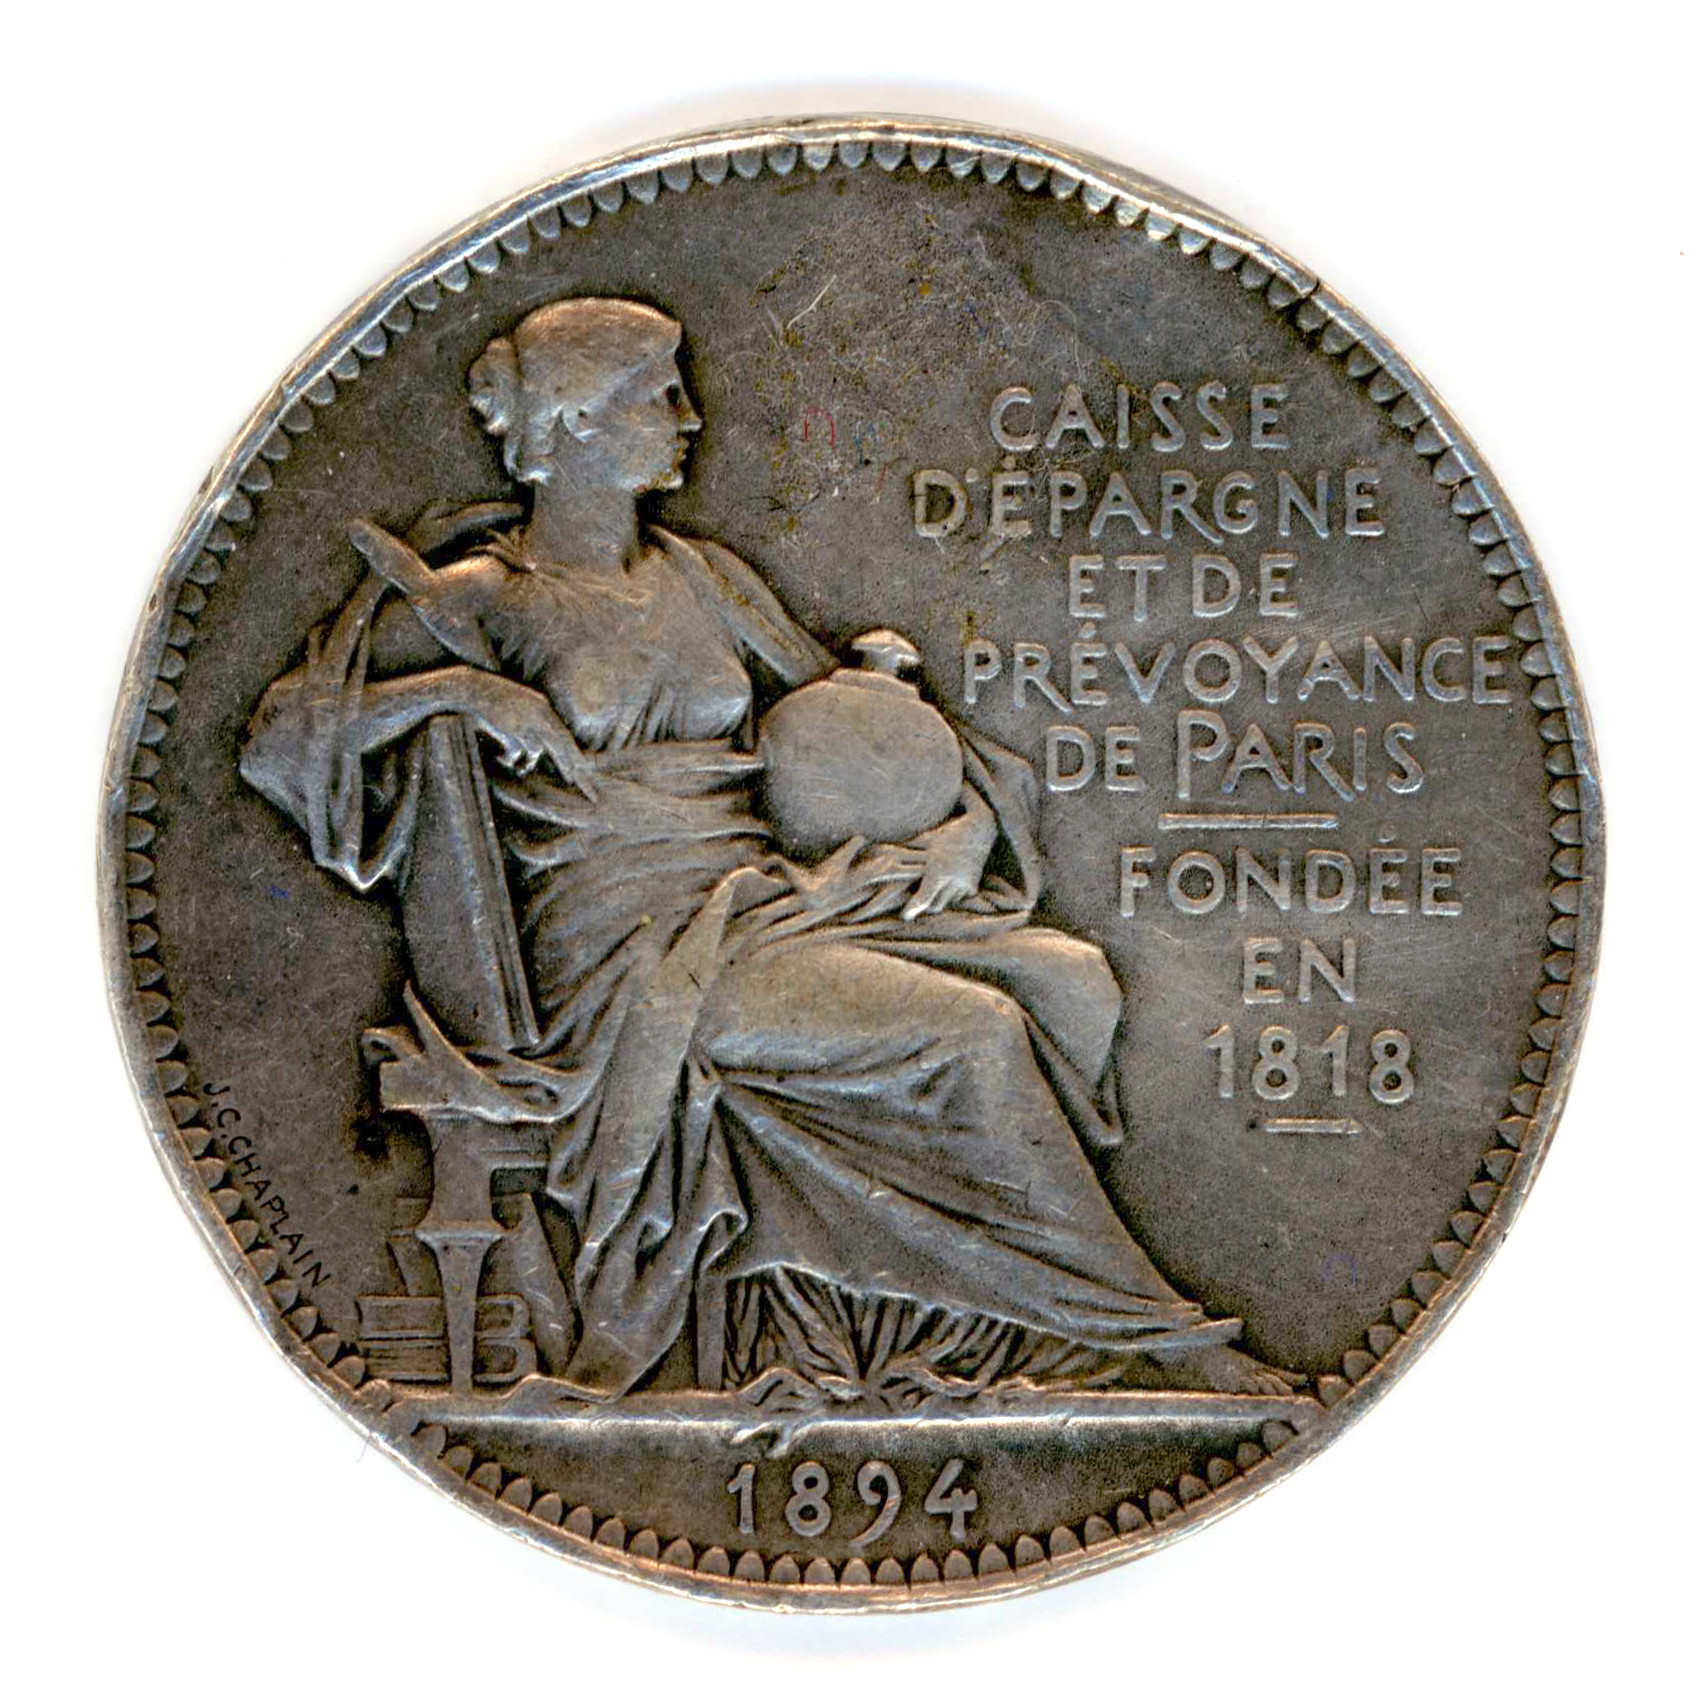 Paris - Caisse d'Epargne et de Prévoyance - 1894 avers